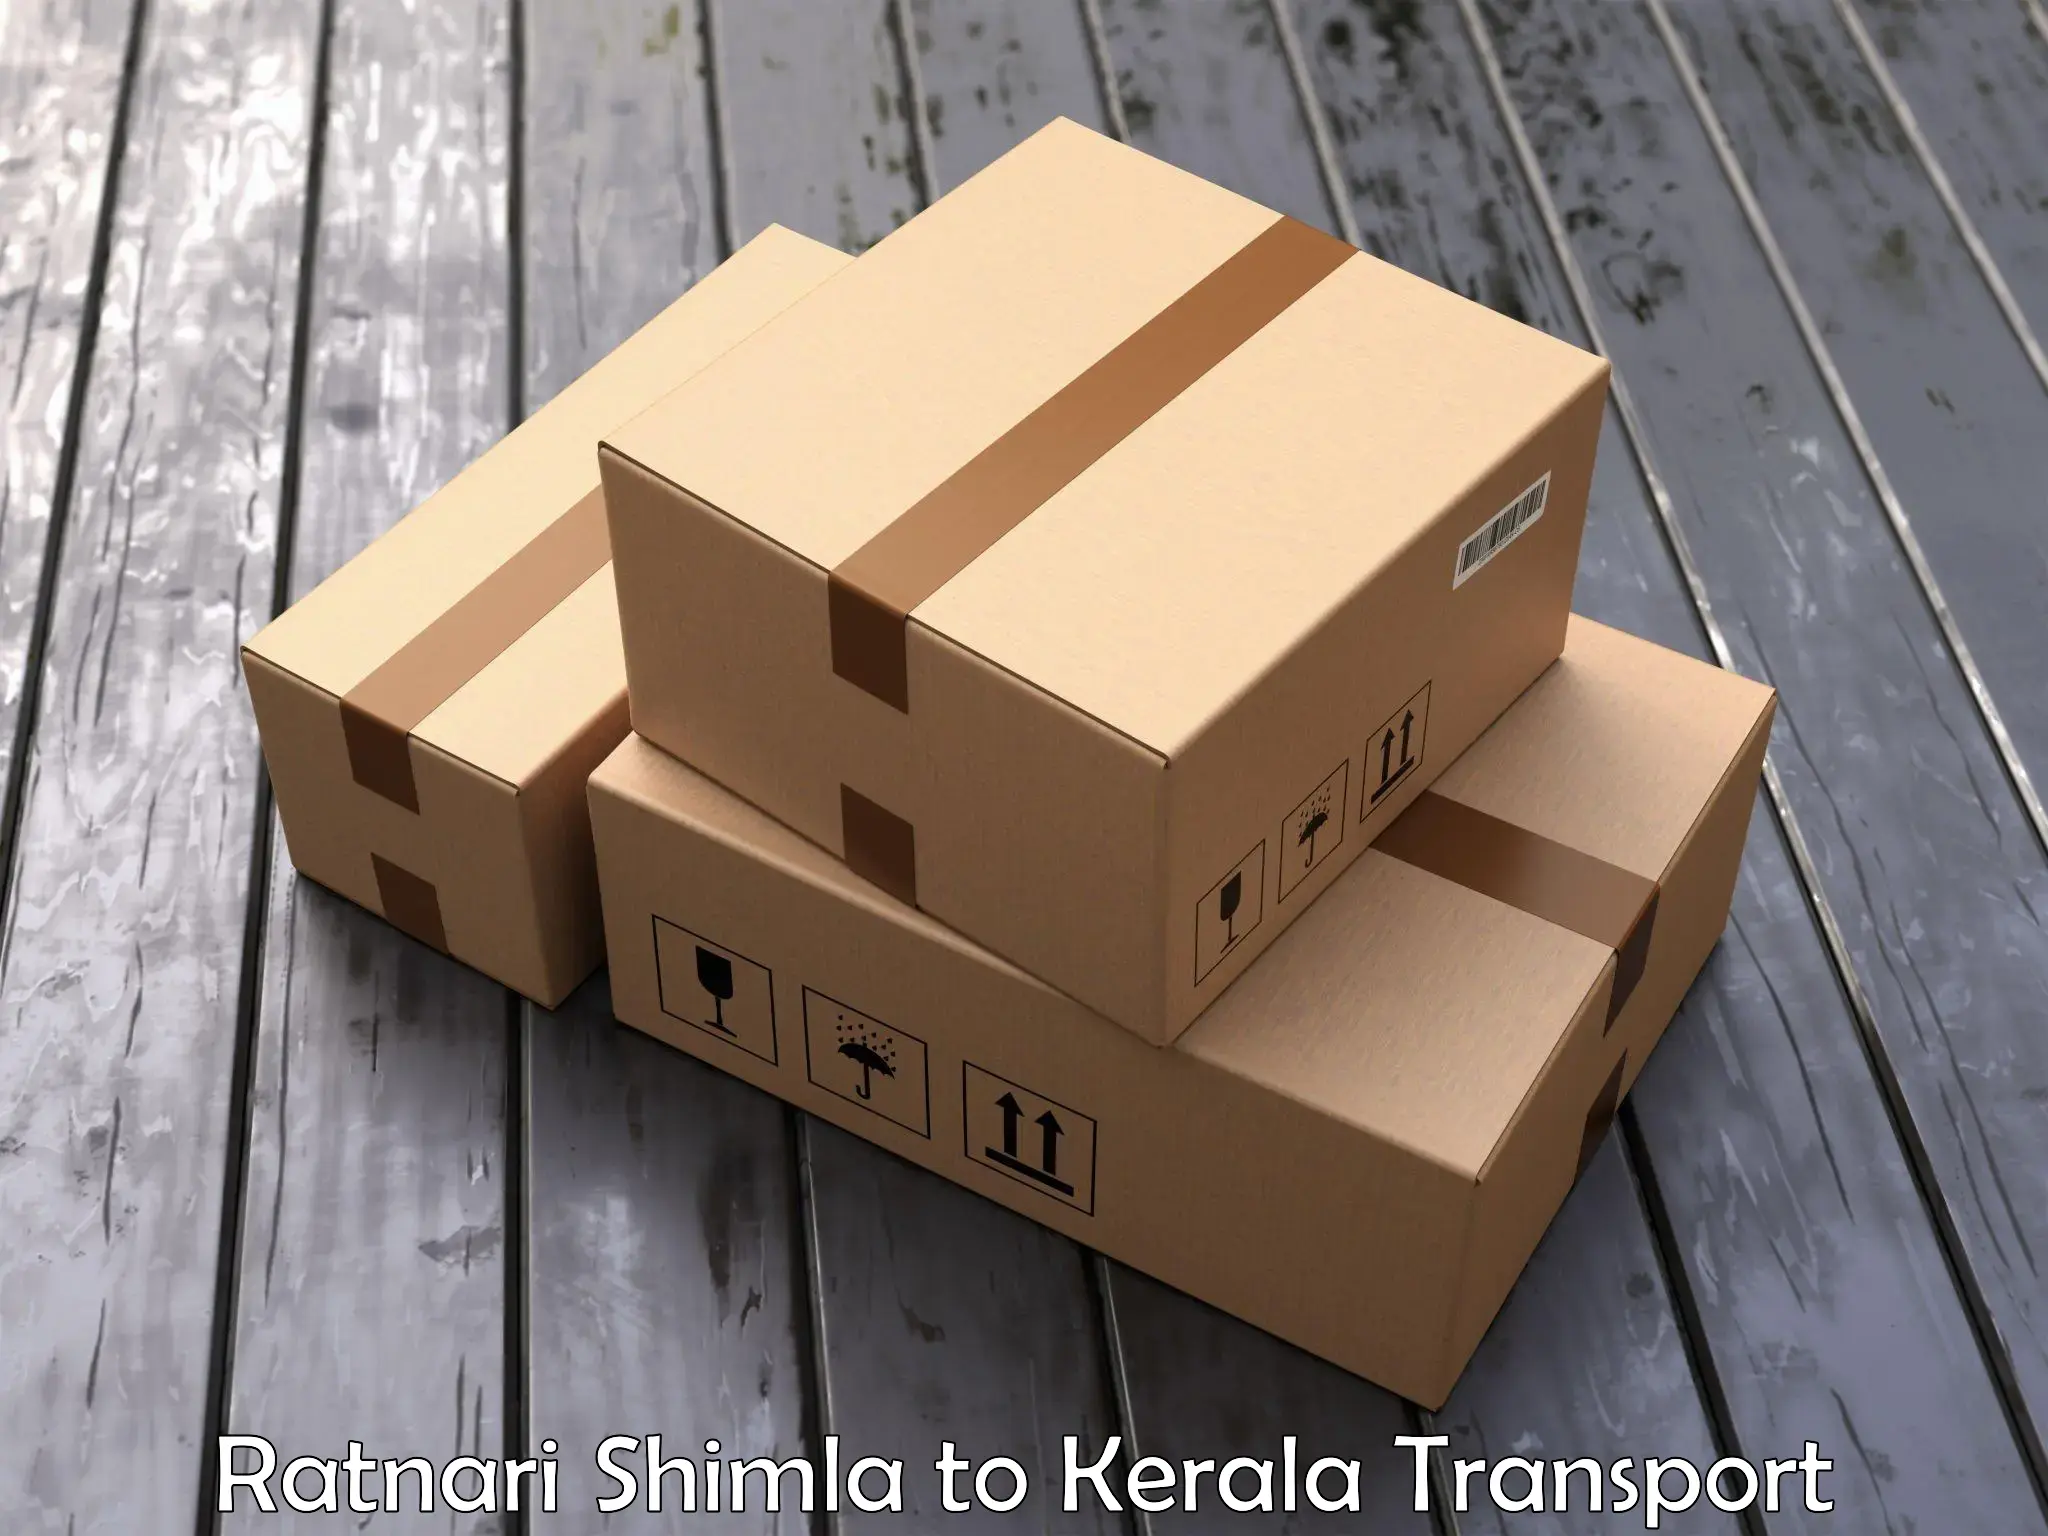 Air freight transport services Ratnari Shimla to Kalanjoor